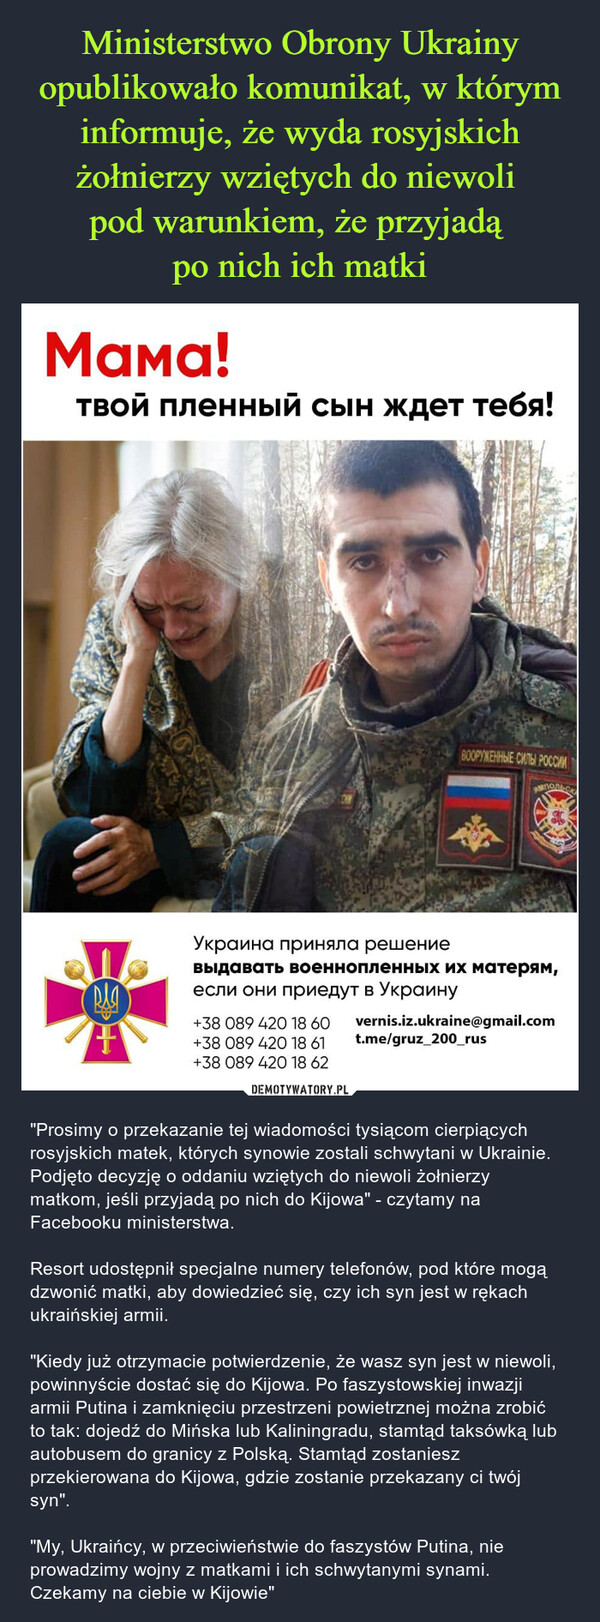  – "Prosimy o przekazanie tej wiadomości tysiącom cierpiących rosyjskich matek, których synowie zostali schwytani w Ukrainie. Podjęto decyzję o oddaniu wziętych do niewoli żołnierzy matkom, jeśli przyjadą po nich do Kijowa" - czytamy na Facebooku ministerstwa. Resort udostępnił specjalne numery telefonów, pod które mogą dzwonić matki, aby dowiedzieć się, czy ich syn jest w rękach ukraińskiej armii. "Kiedy już otrzymacie potwierdzenie, że wasz syn jest w niewoli, powinnyście dostać się do Kijowa. Po faszystowskiej inwazji armii Putina i zamknięciu przestrzeni powietrznej można zrobić to tak: dojedź do Mińska lub Kaliningradu, stamtąd taksówką lub autobusem do granicy z Polską. Stamtąd zostaniesz przekierowana do Kijowa, gdzie zostanie przekazany ci twój syn"."My, Ukraińcy, w przeciwieństwie do faszystów Putina, nie prowadzimy wojny z matkami i ich schwytanymi synami. Czekamy na ciebie w Kijowie" 